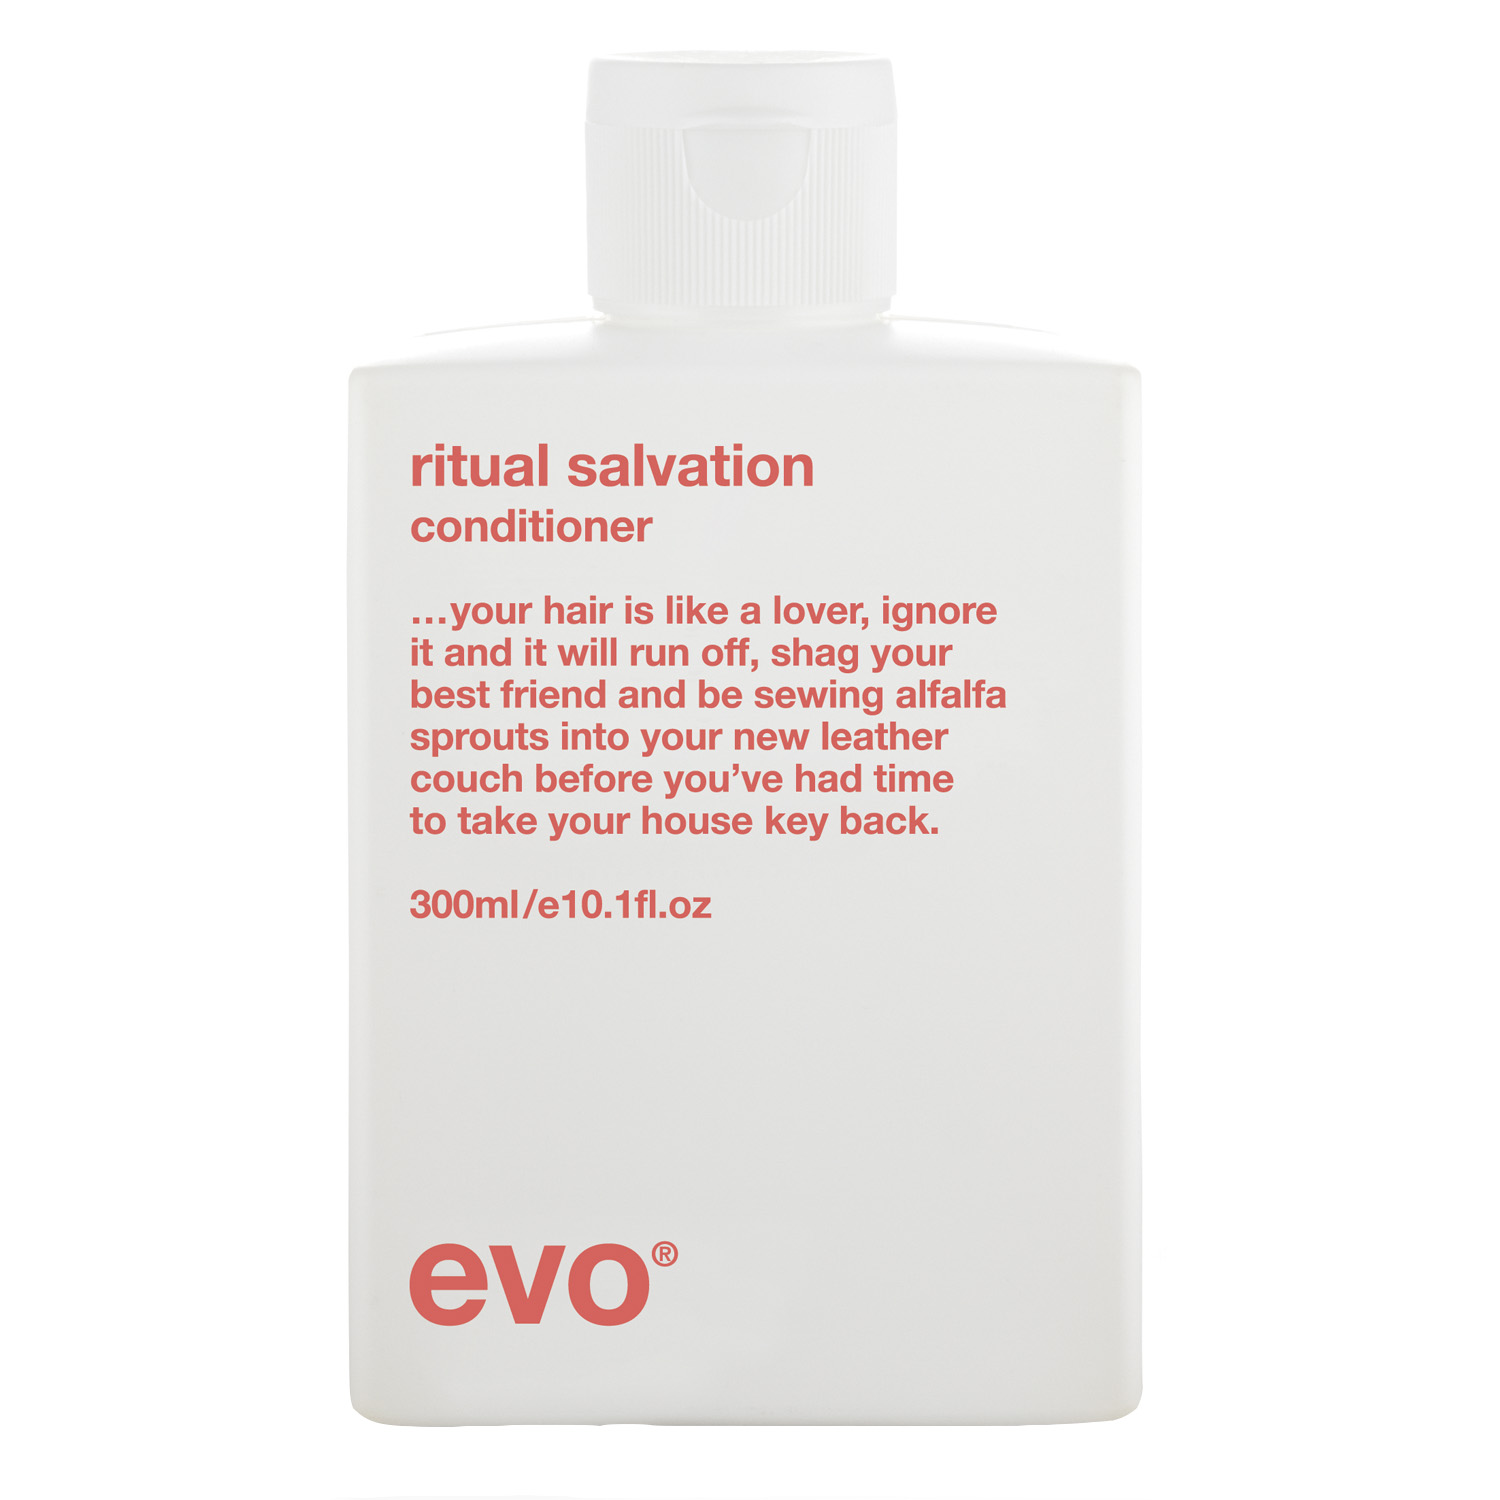 EVO Кондиционер для окрашенных волос [спасение и блаженство], 300 мл (EVO, ritual salvation) цена и фото